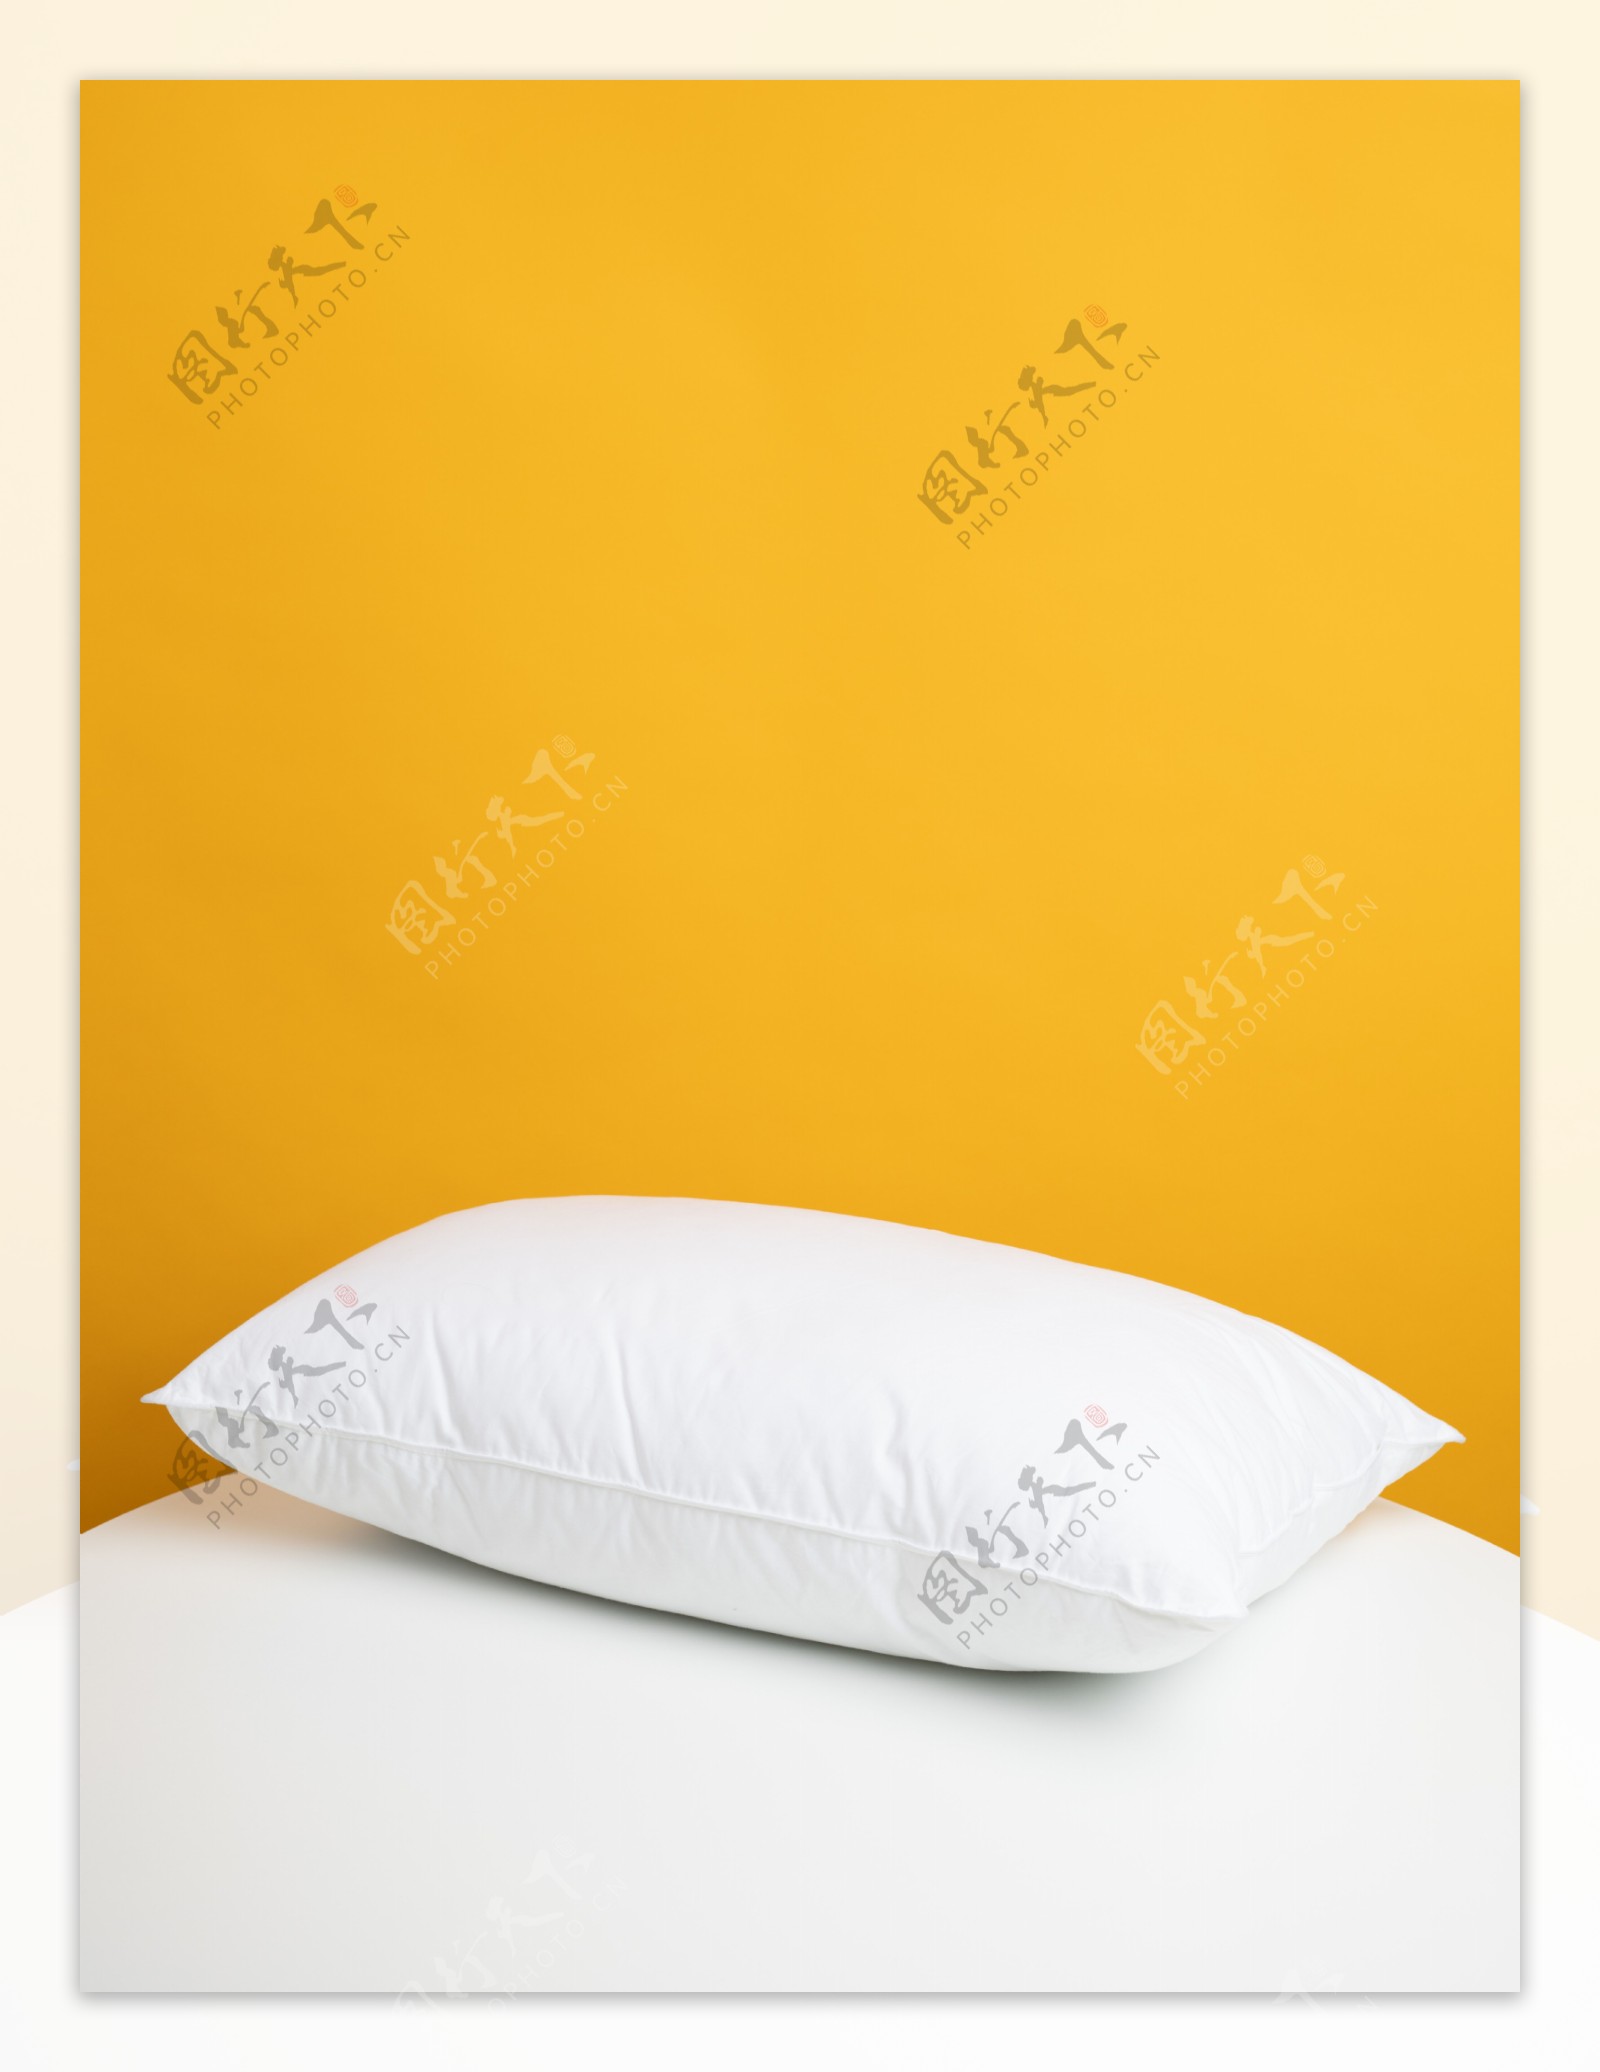 黄色背景简约风格白色枕头